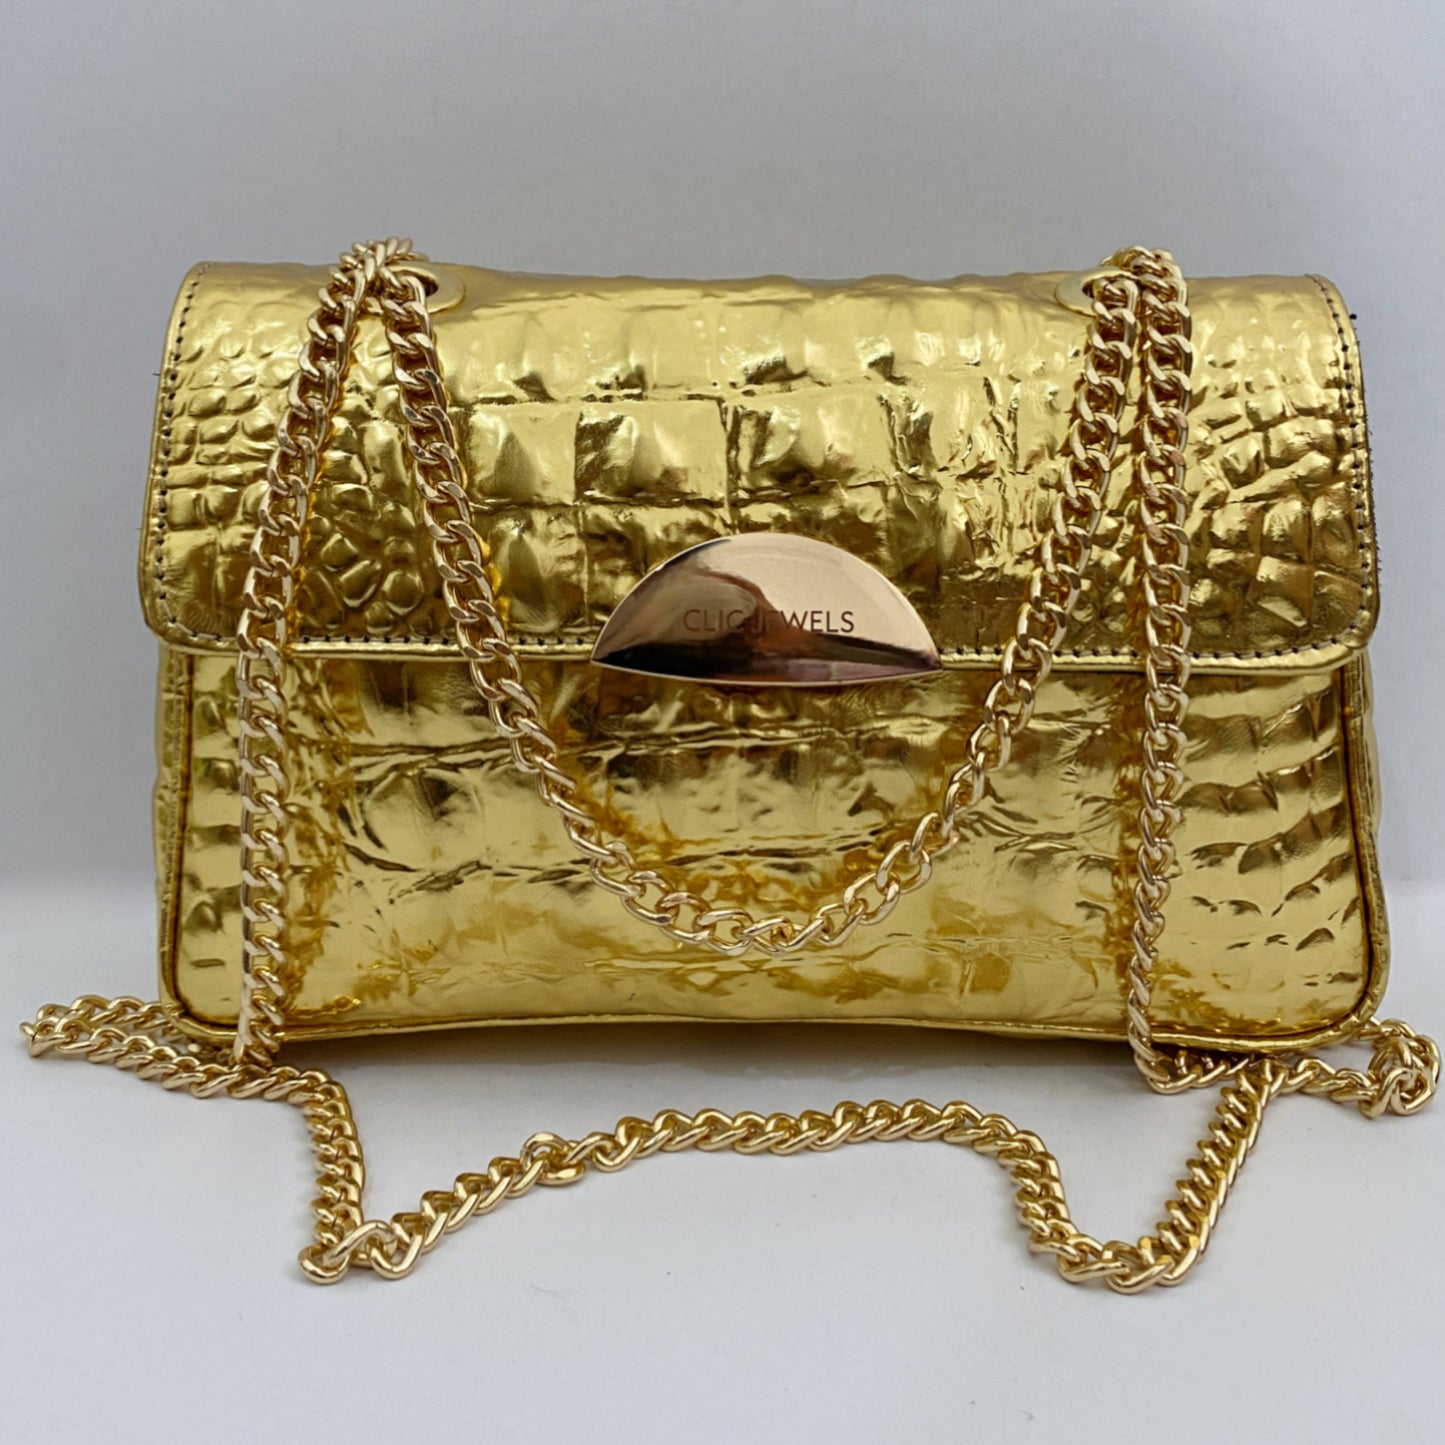 NEIRA MINI (gold croco genuine leather)